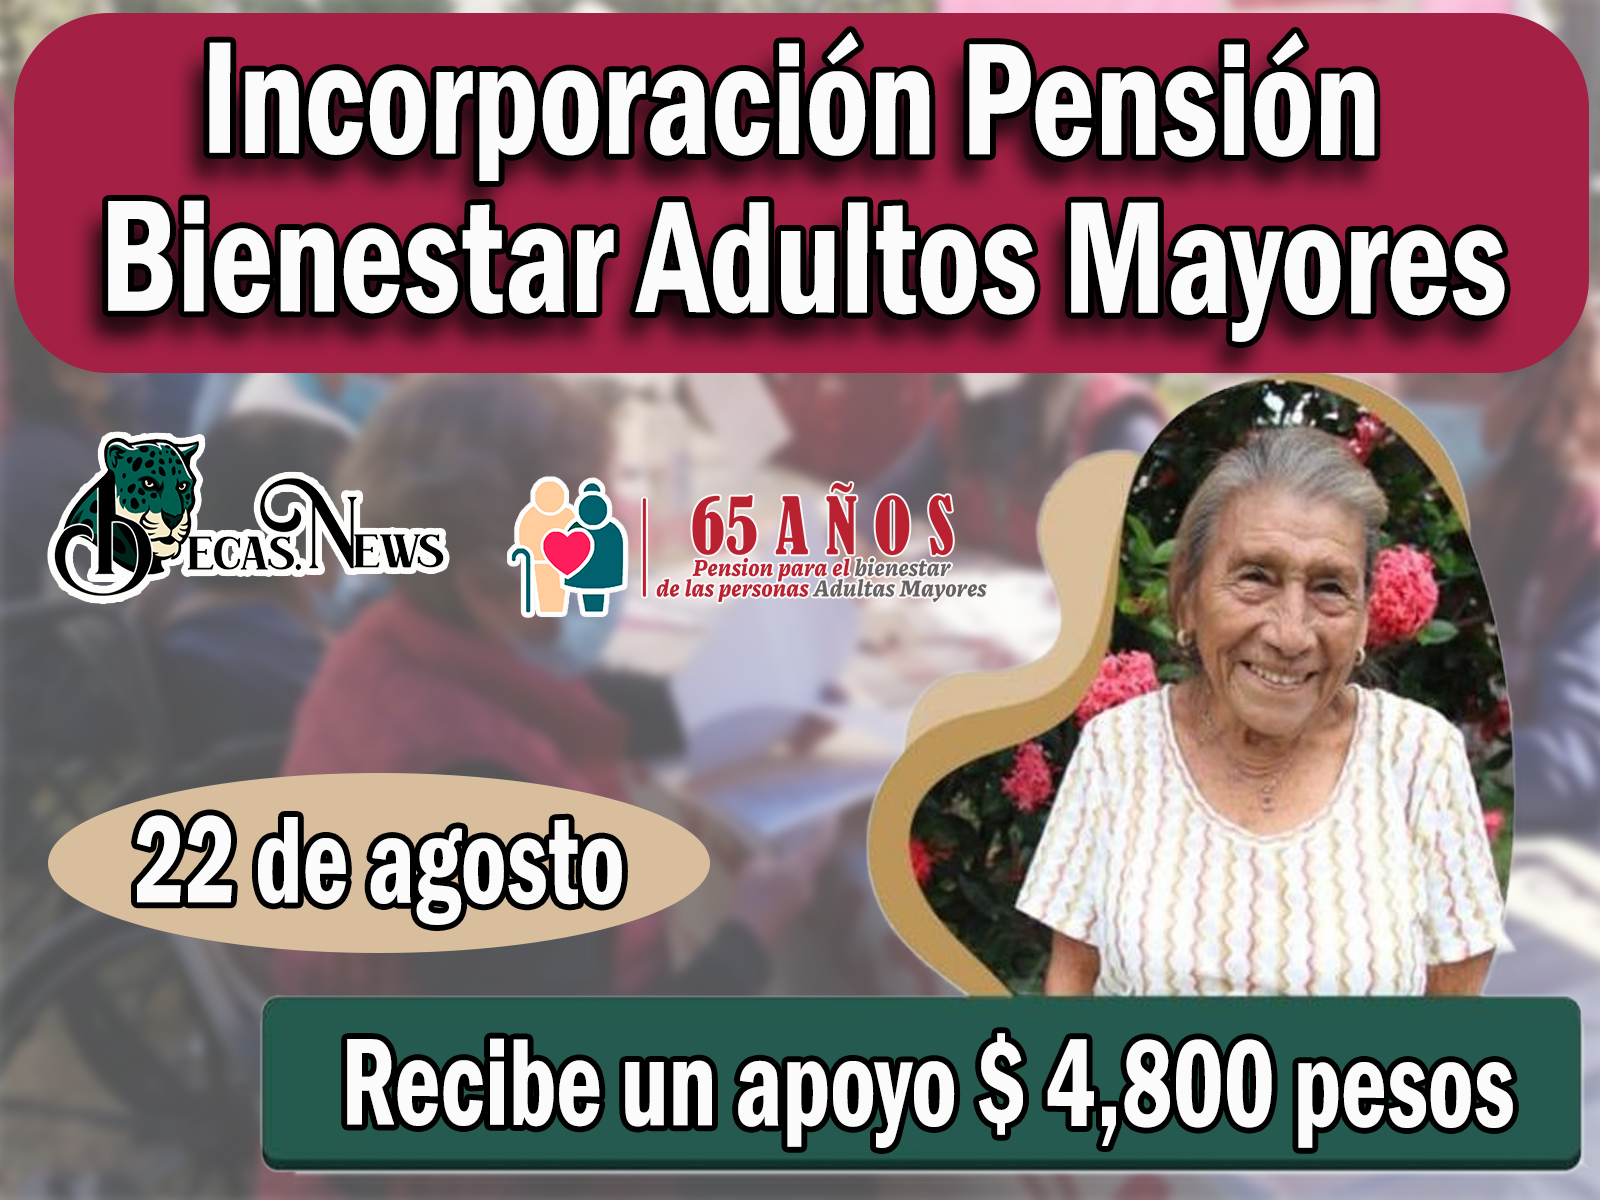 Pensión Bienestar: Nuevos adultos mayores que podrán hacer el proceso de incorporación el 22 de agosto 